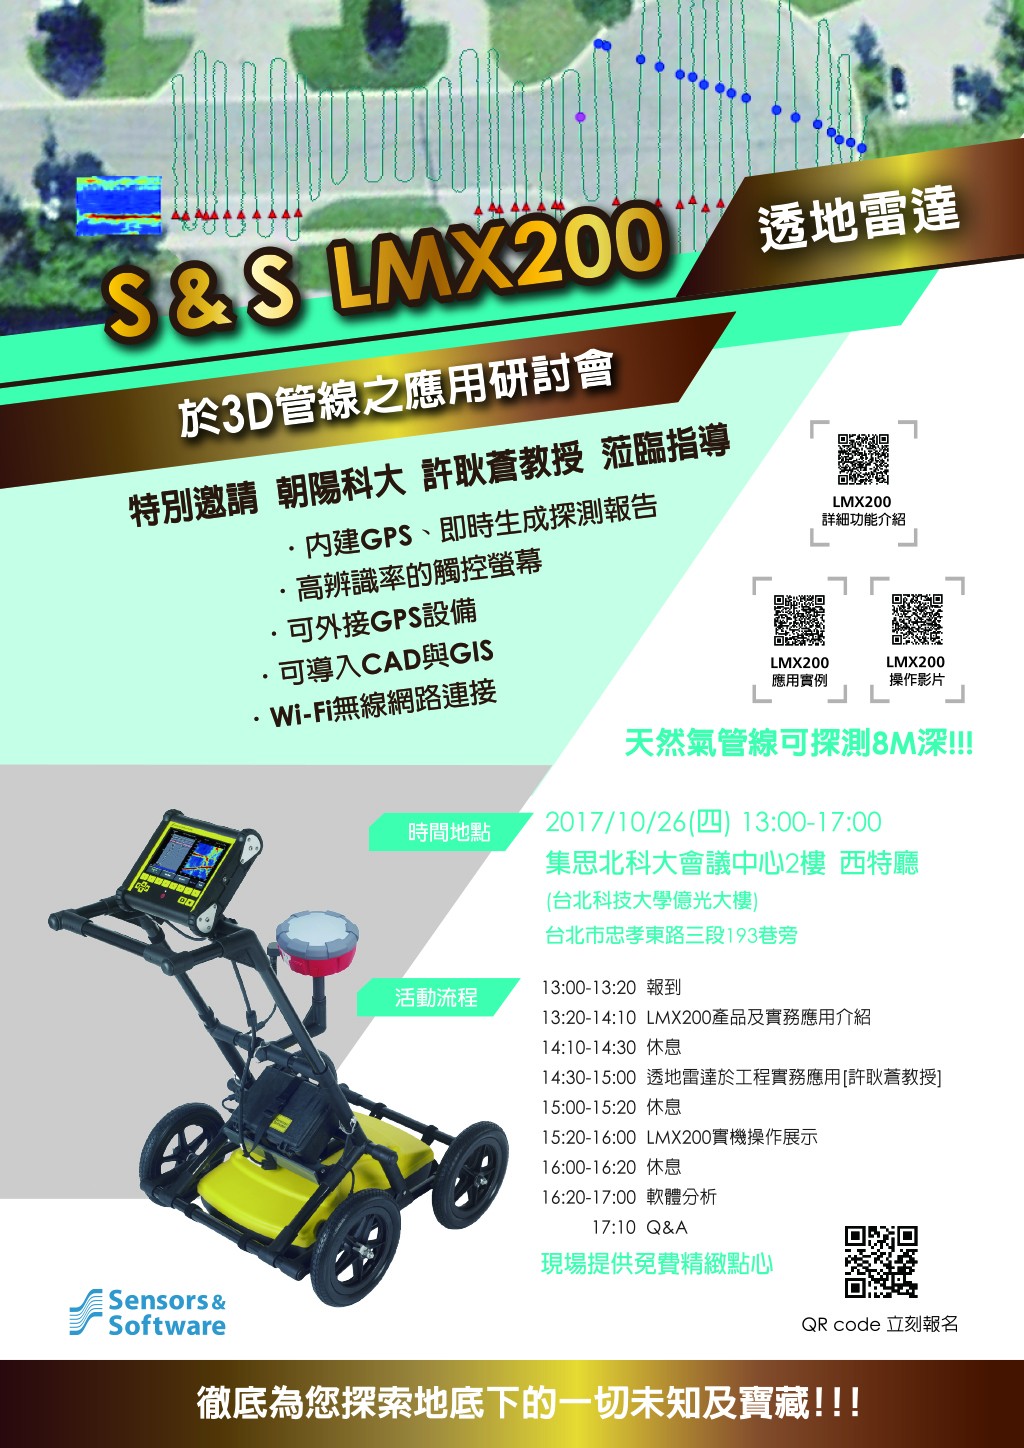 中翰_1026展示會邀請函_A4_250g銅西卡沒有要上光+雙面印刷+壓線+對摺_200張_out-2.jpg - Sensor & Software LMX200於3D管線之應用研討會